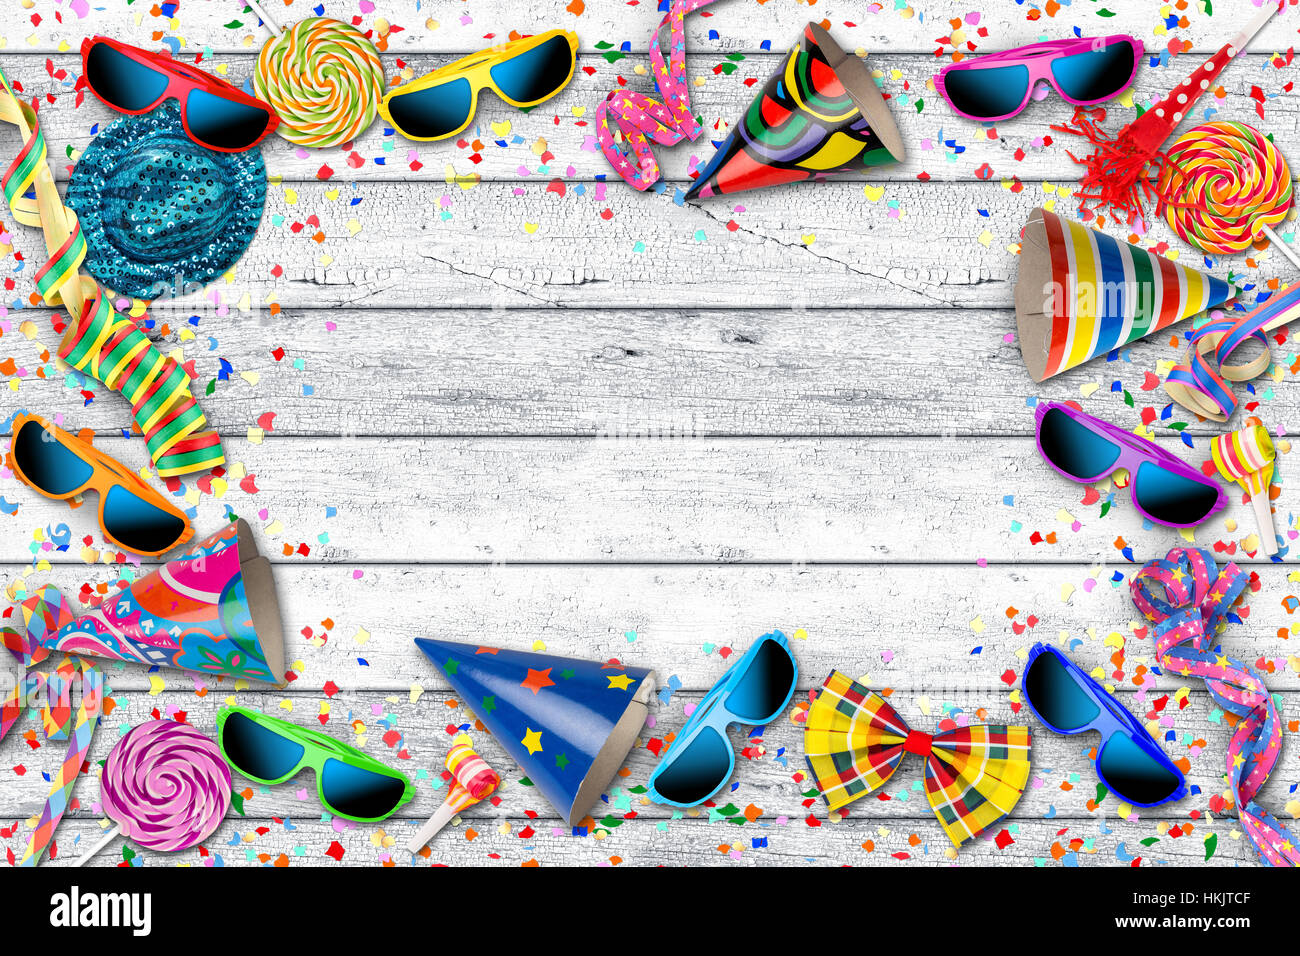 Parte carnaval cumpleaños fondo con coloridas gafas espantapájaros confeti hat piruleta sobre mesa de madera blanca Foto de stock